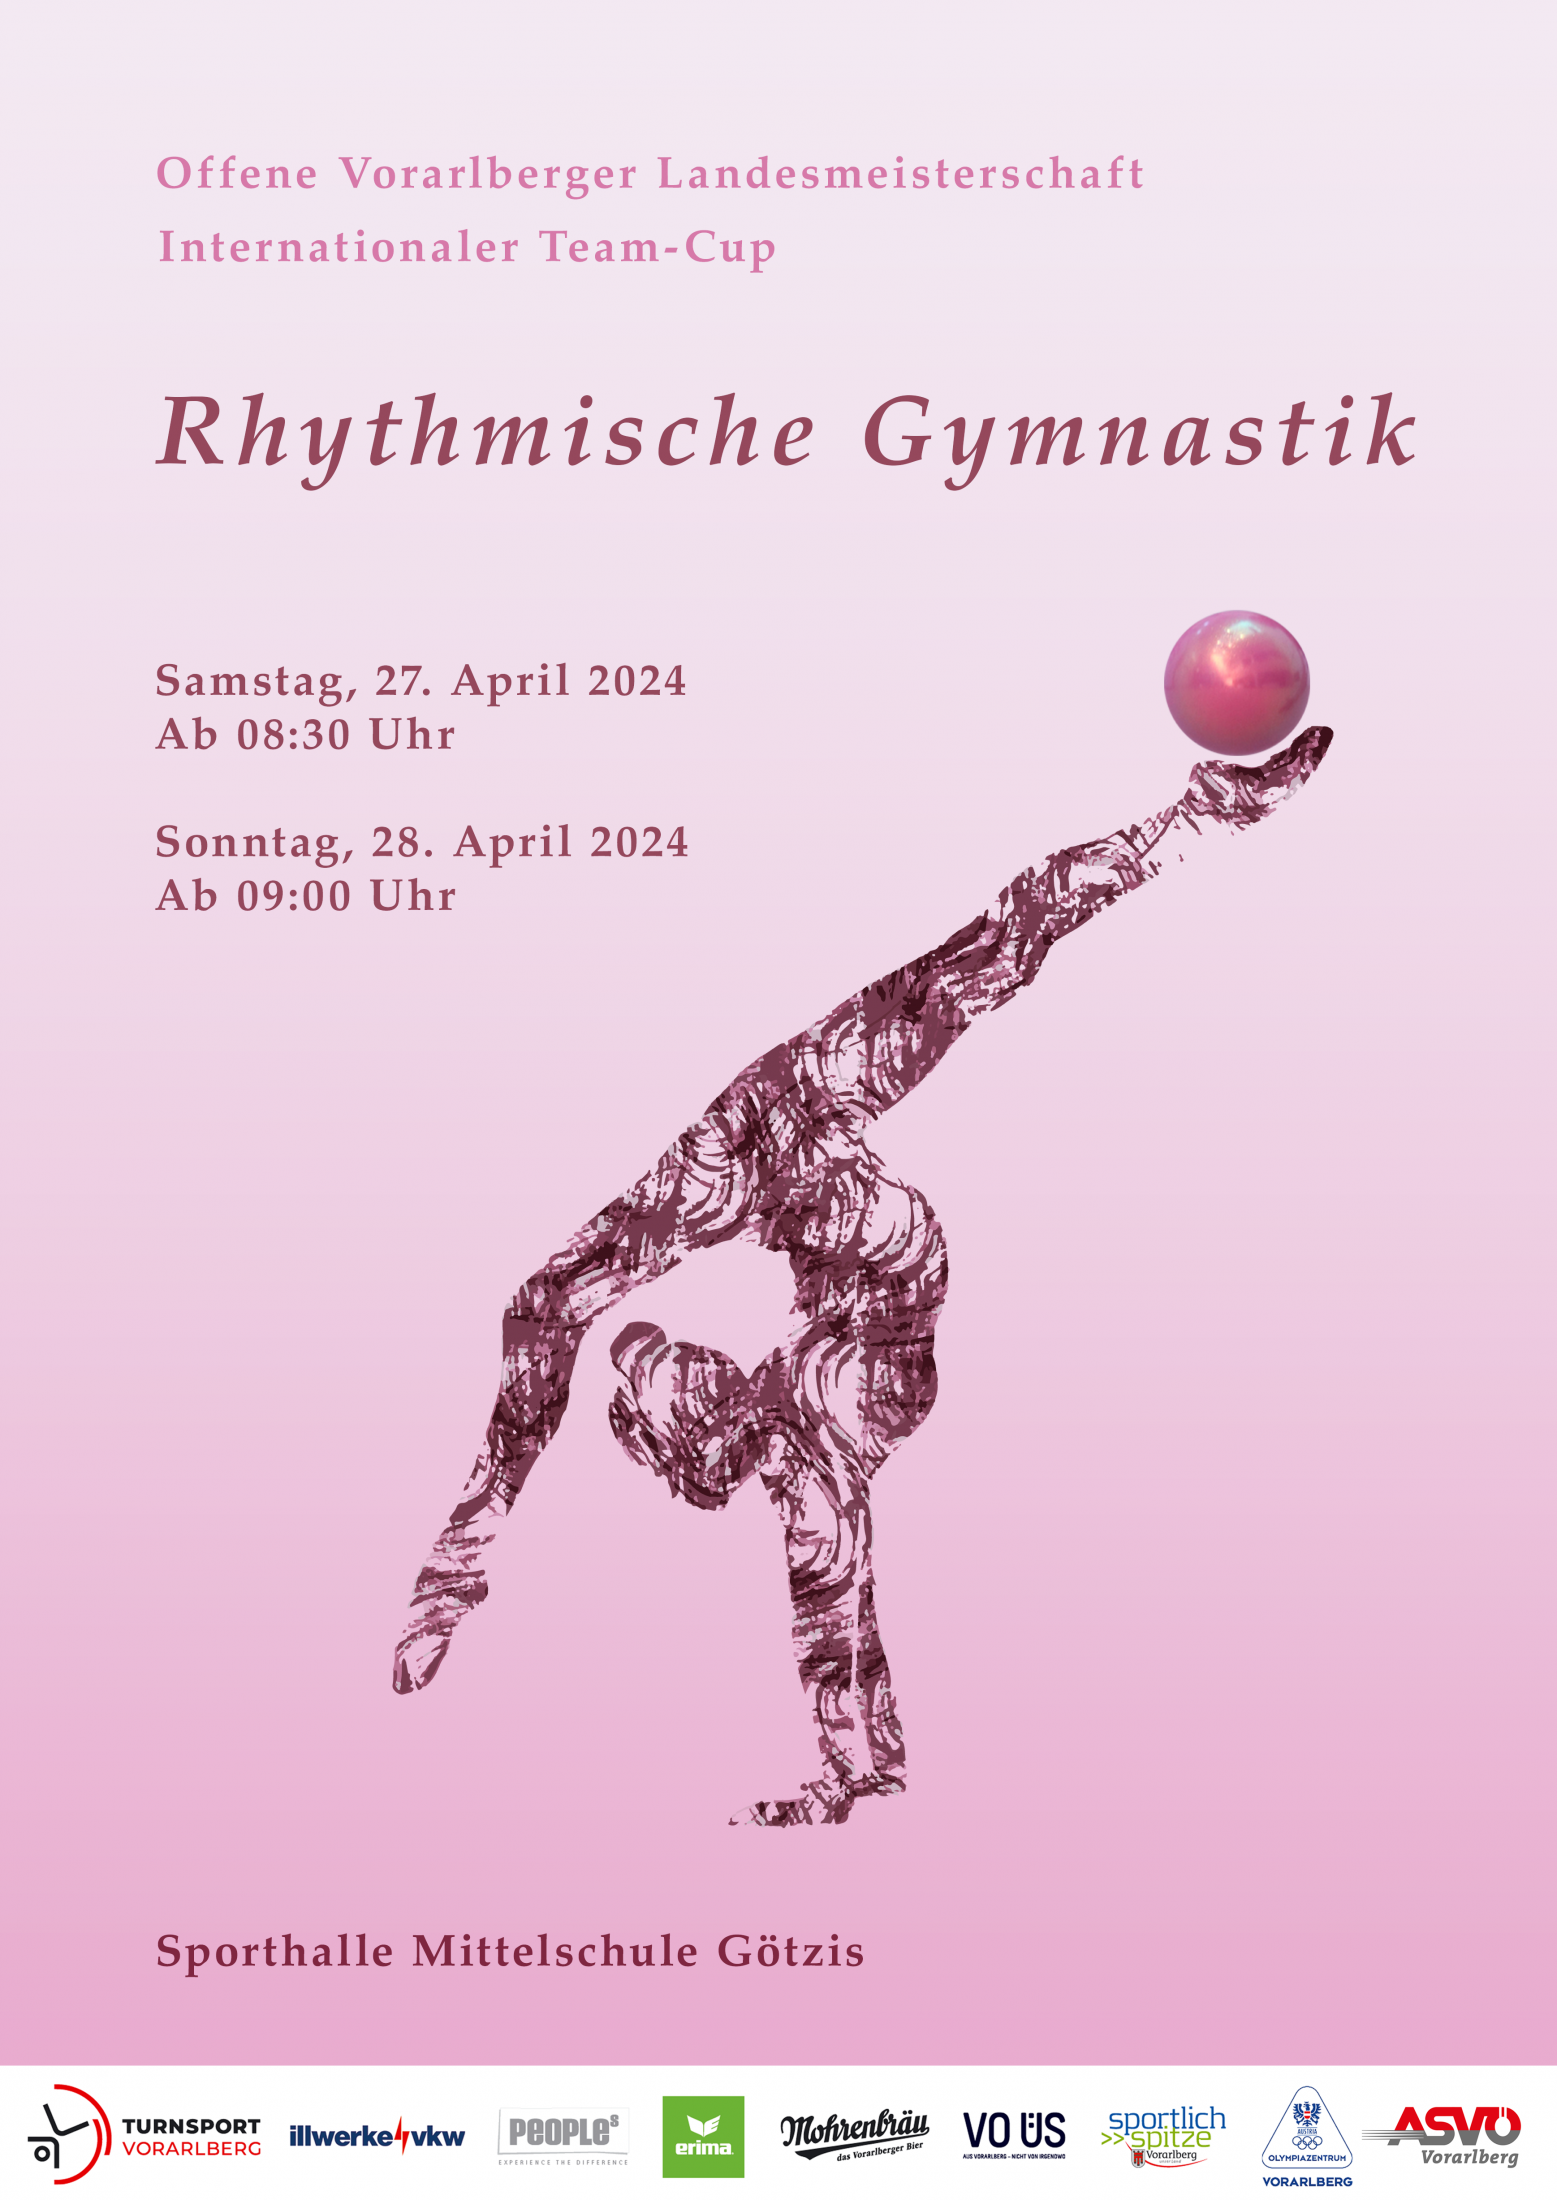 Offene Vorarlberger Landesmeisterschaft in Rhythmischer Gymnastik 2024